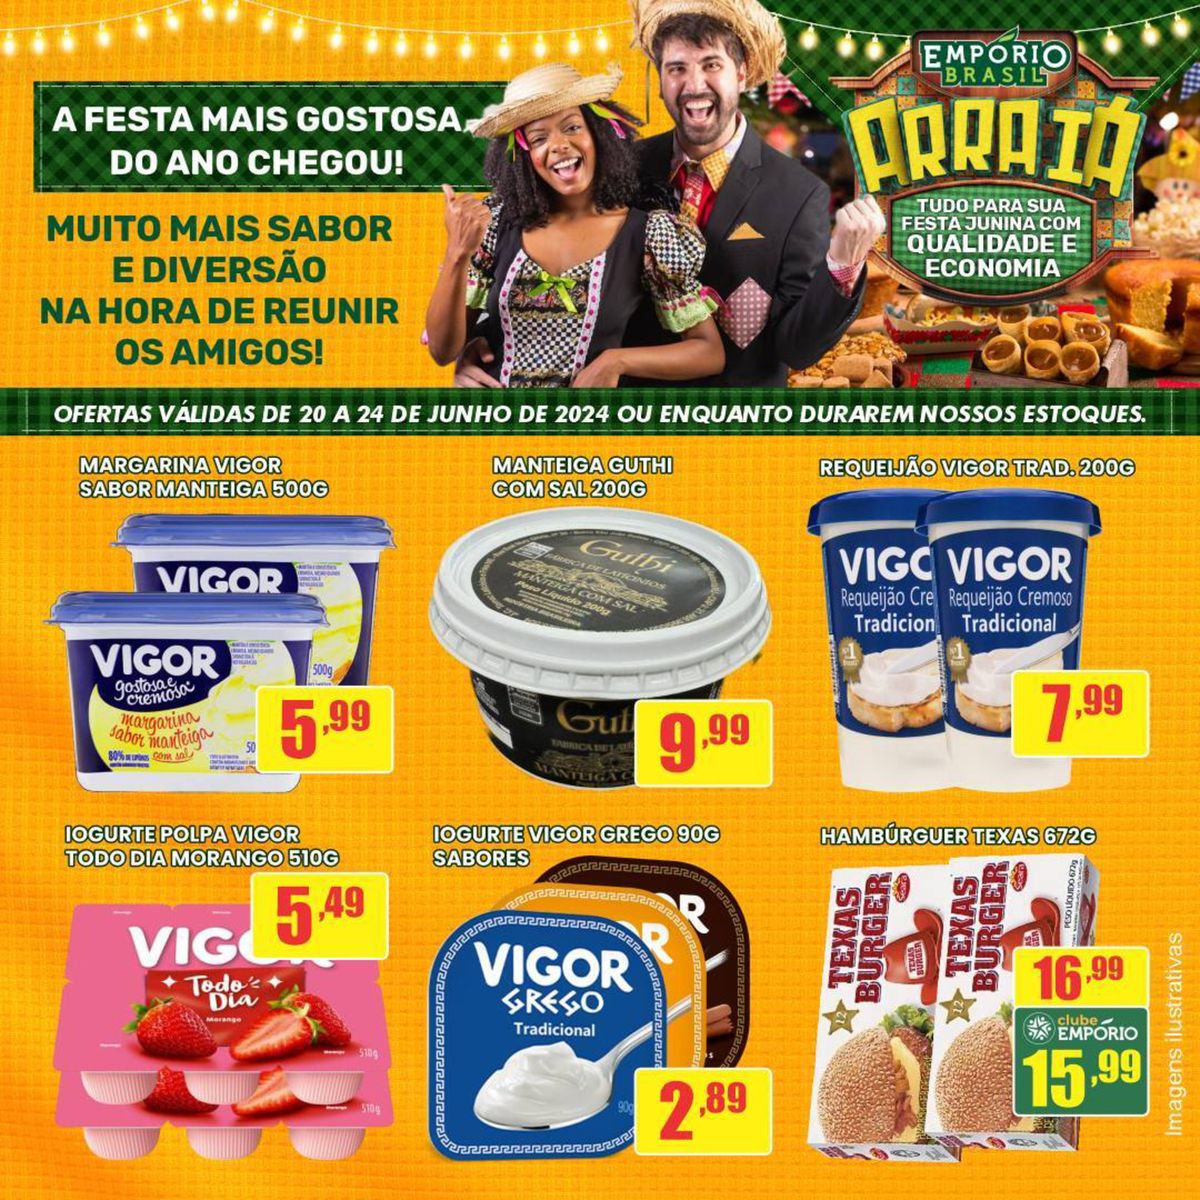 Promoção de Margarina Vigor e Manteiga Guthi